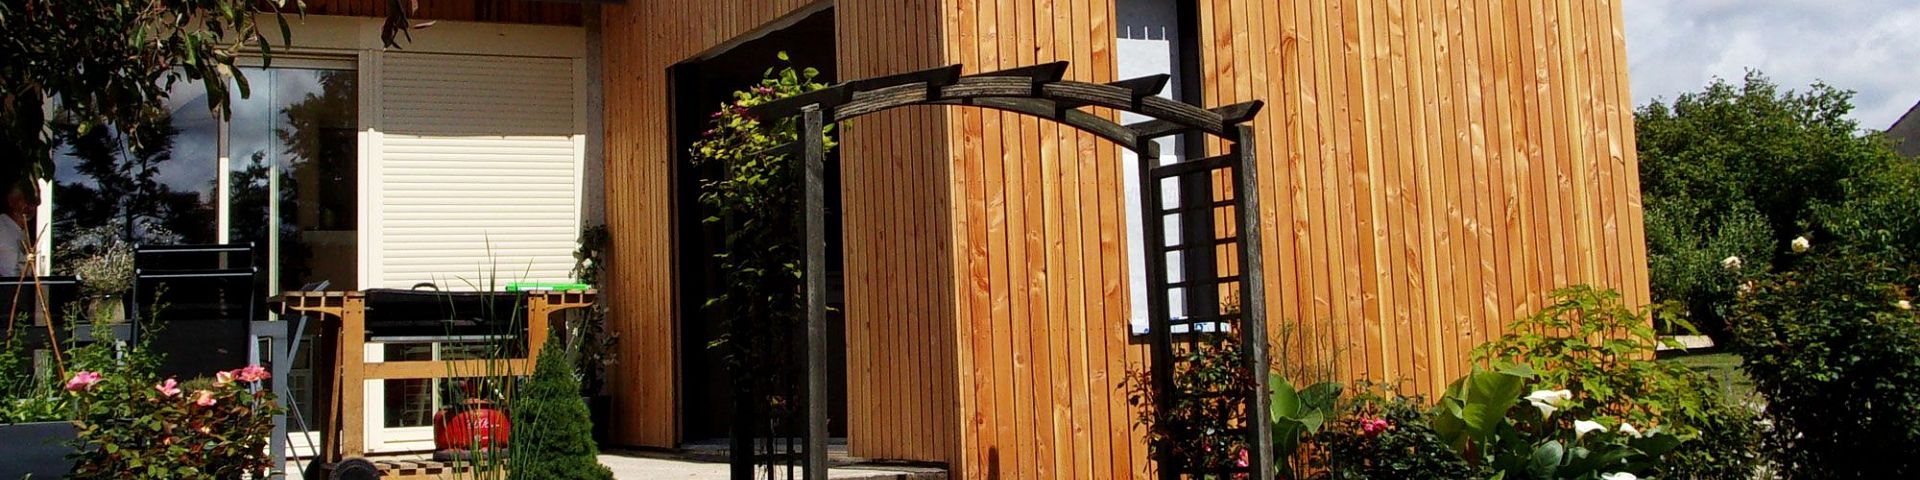 Réalisation d'une extension en structure bois à Saulon la Rue